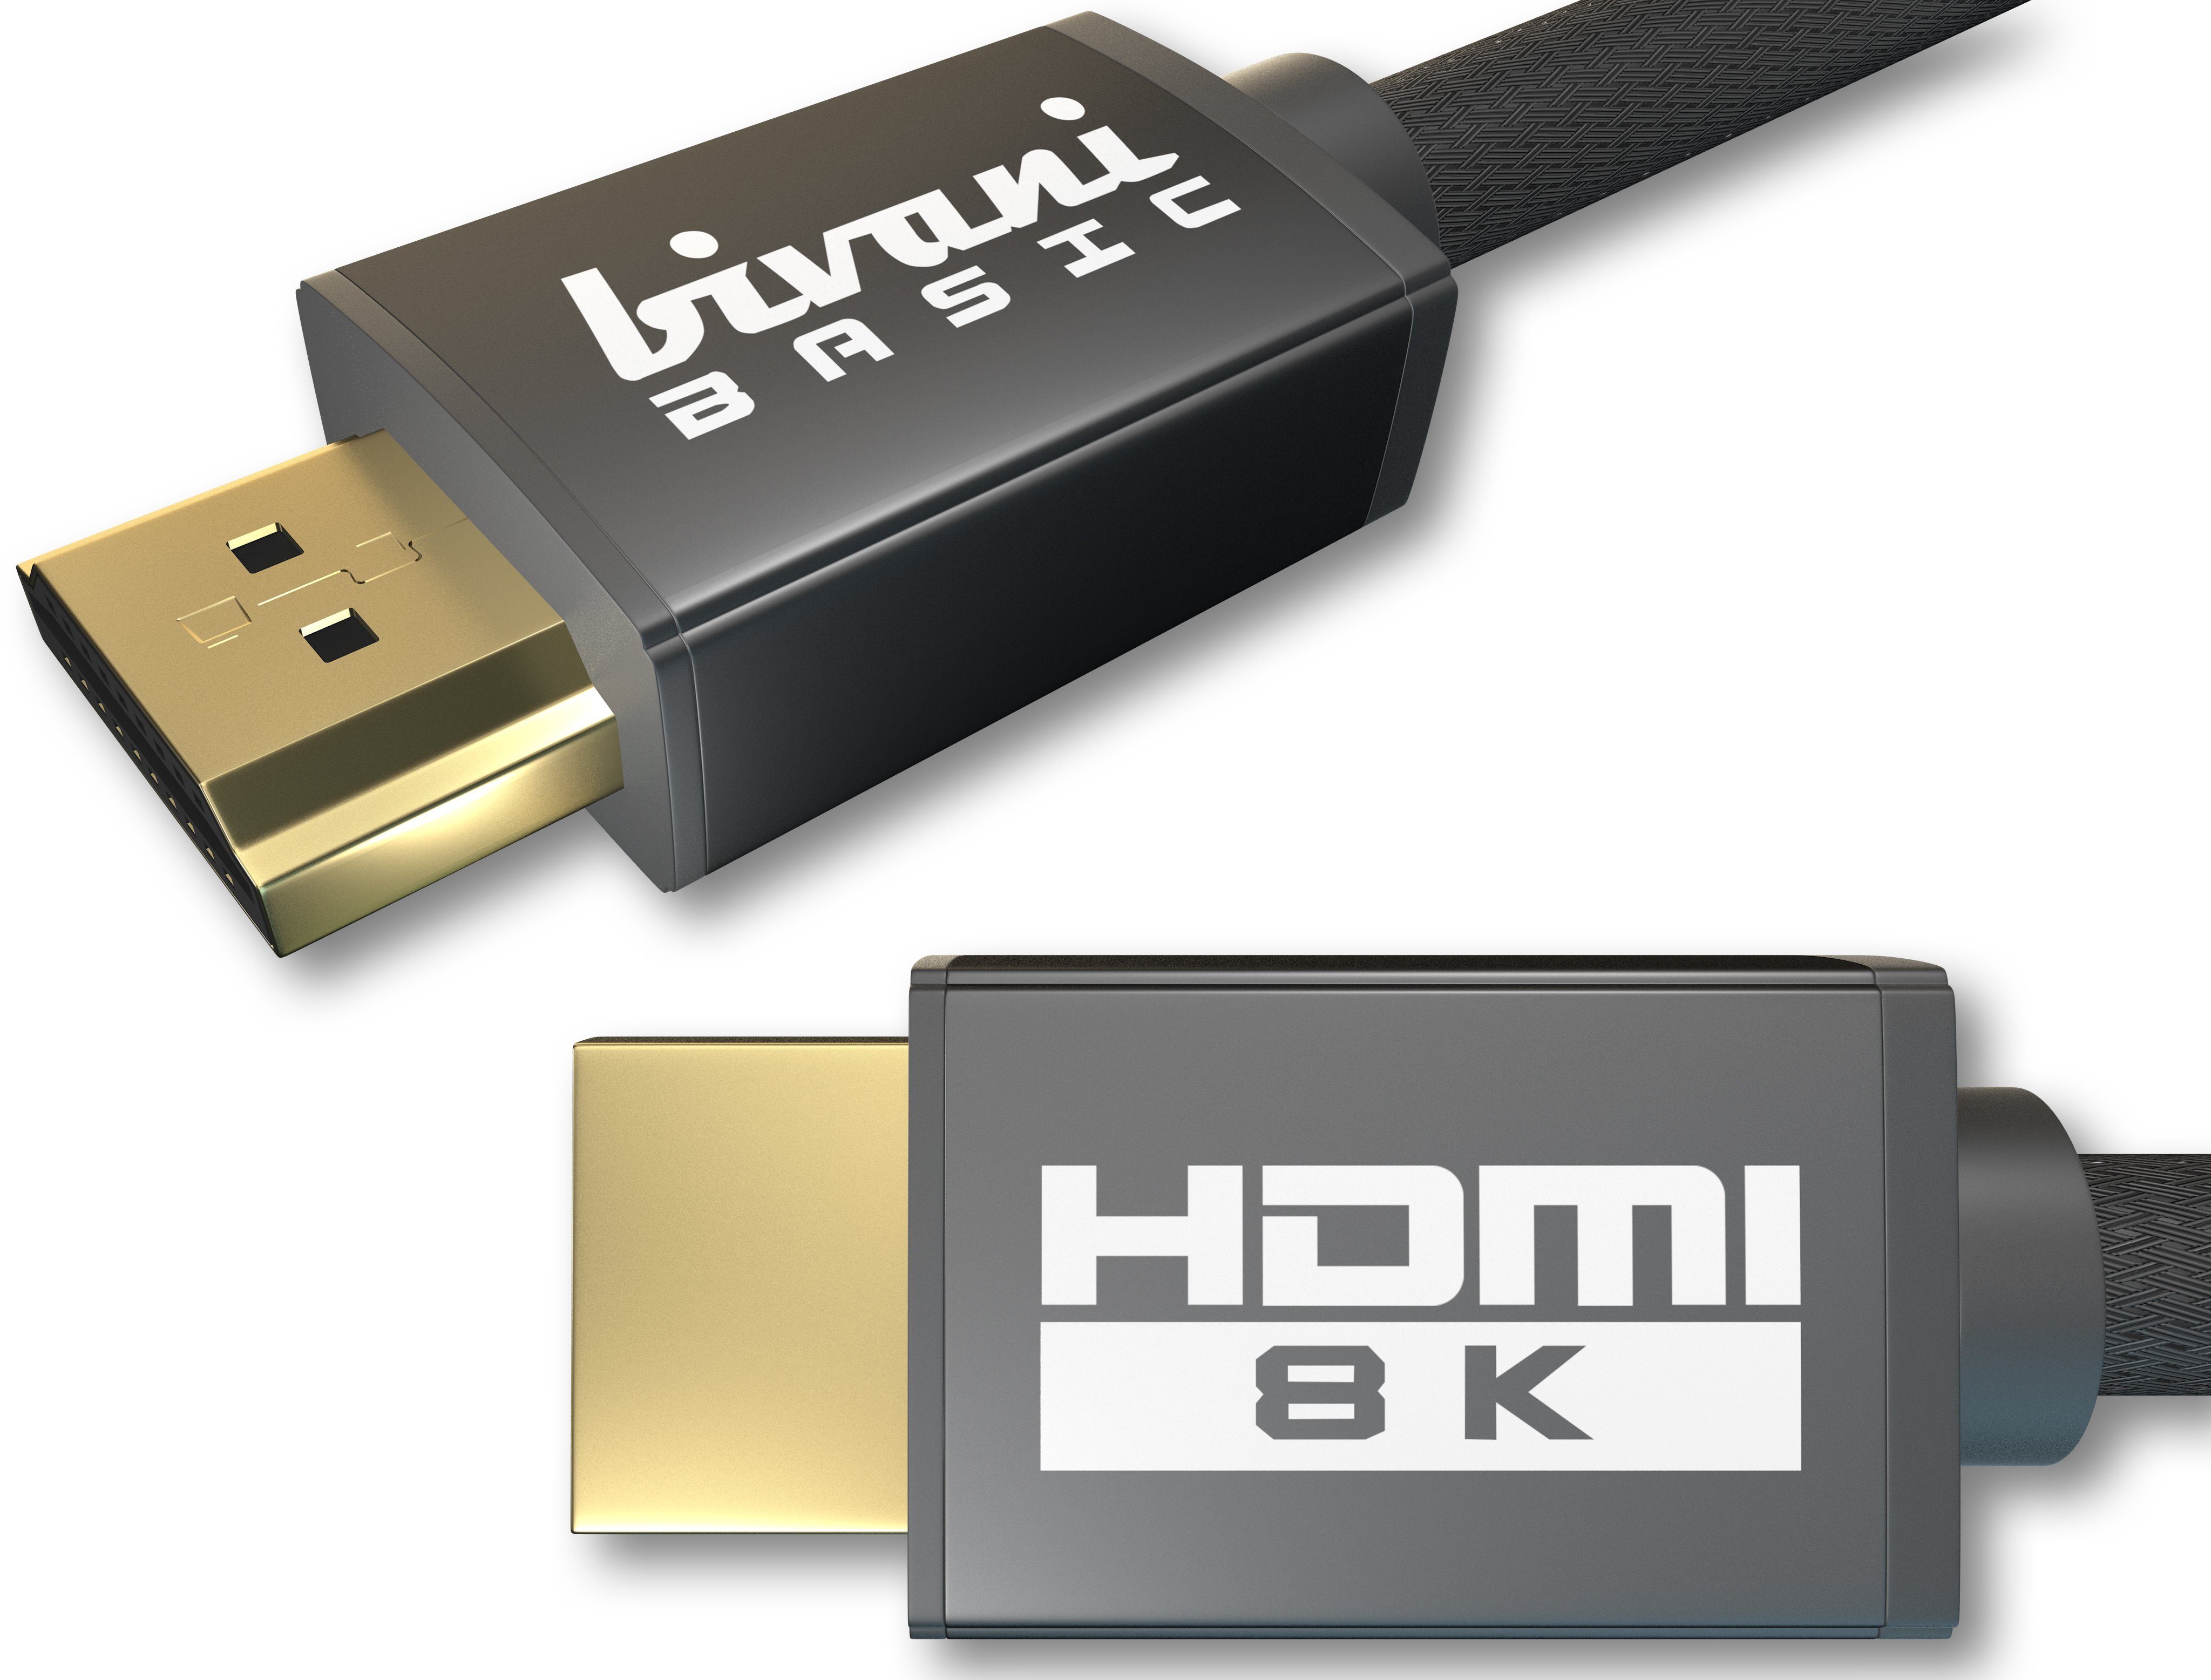 bivani 8K HDMI 2.1a Kabel HDMI-Kabel, HDMI, HDMI Typ A (100 cm), 48 Gbps, bis 10K, 8K@60HZ, 4K@120HZ, HDR10+, eARC, VRR, HDCP, CEC, Highspeed Ethernet, PS5 & Xbox Series X Ready | Monitorkabel